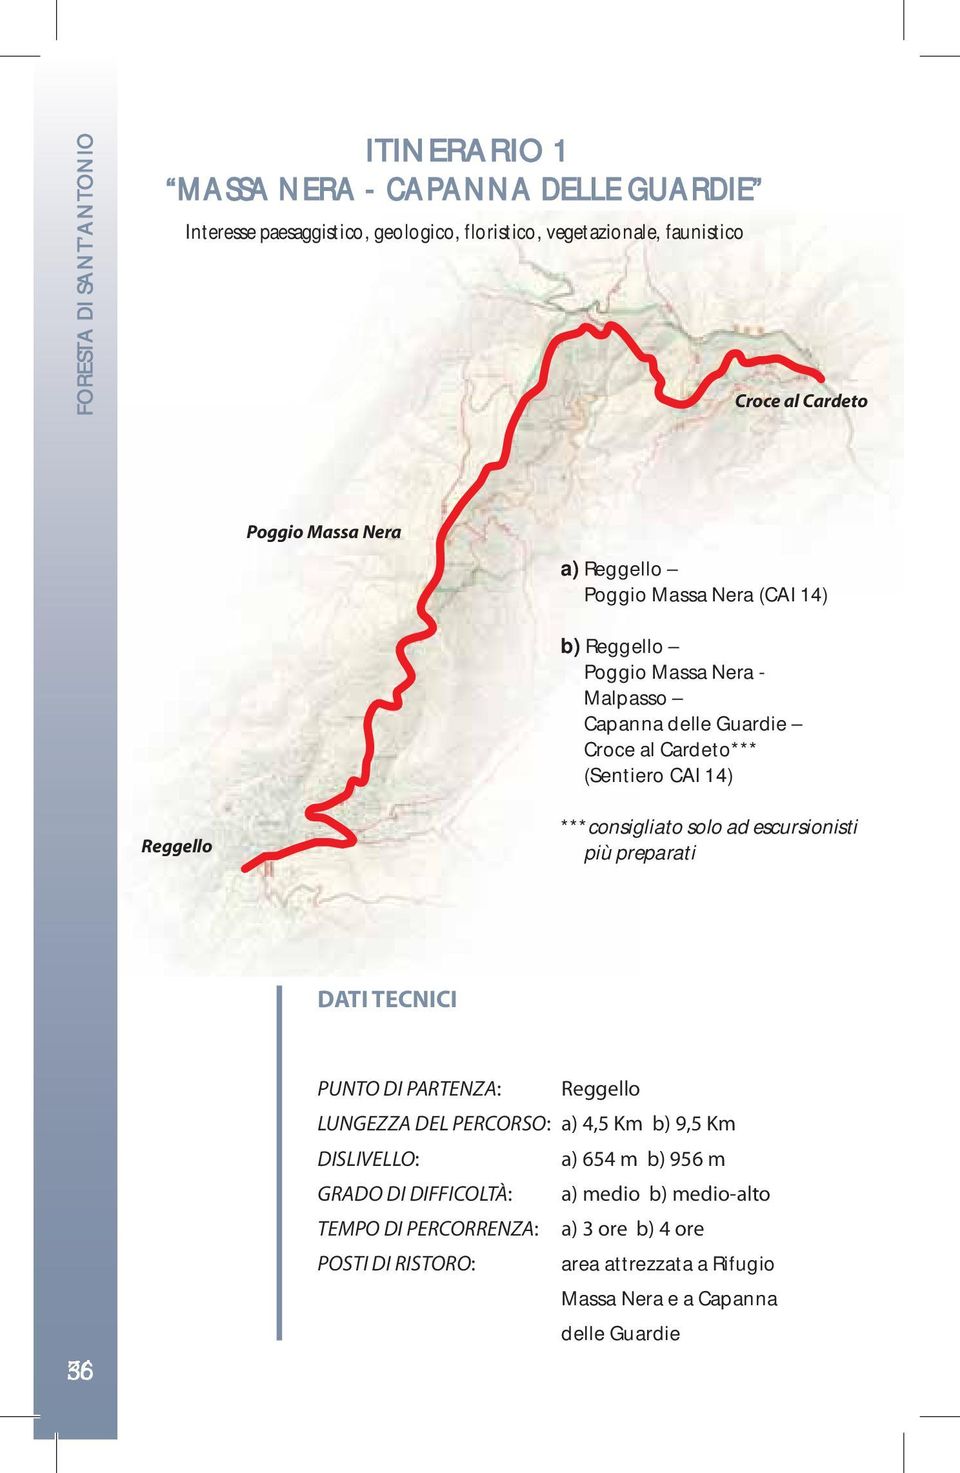 ***consigliato solo ad escursionisti più preparati DATI TECNICI 36 PUNTO DI PARTENZA: Reggello LUNGEZZA DEL PERCORSO: a) 4,5 Km b) 9,5 Km DISLIVELLO: a) 654 m